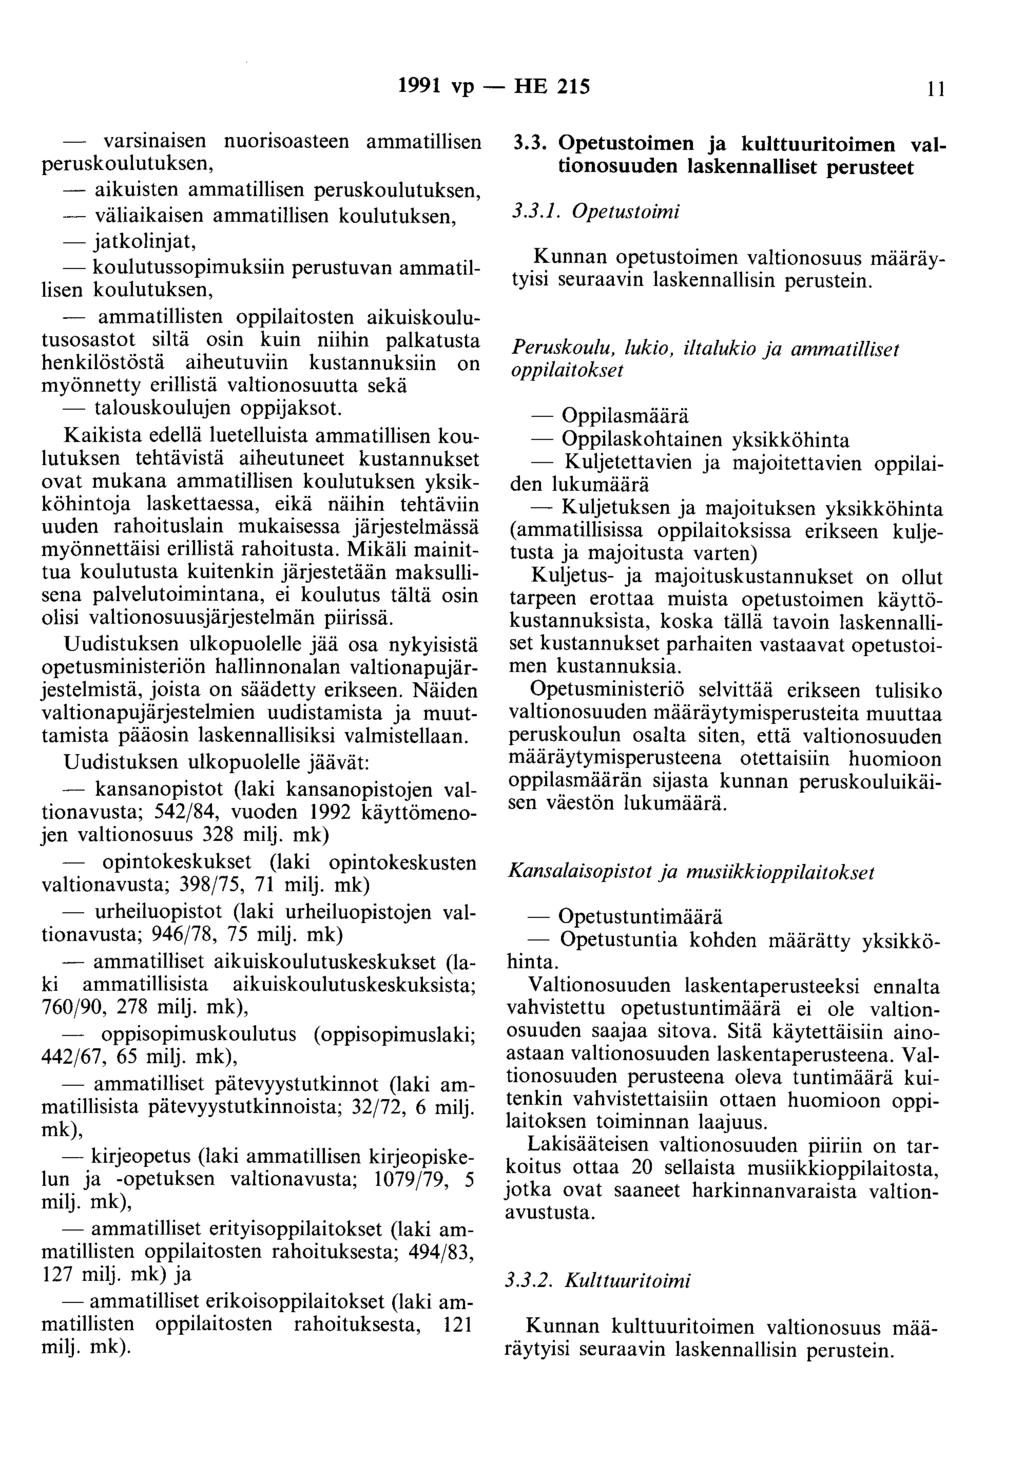 1991 vp - HE 215 II varsinaisen nuorisoasteen ammatillisen peruskoulutuksen, - aikuisten ammatillisen peruskoulutuksen, - väliaikaisen ammatillisen koulutuksen, - jatkolinjat, - koulutussopimuksiin